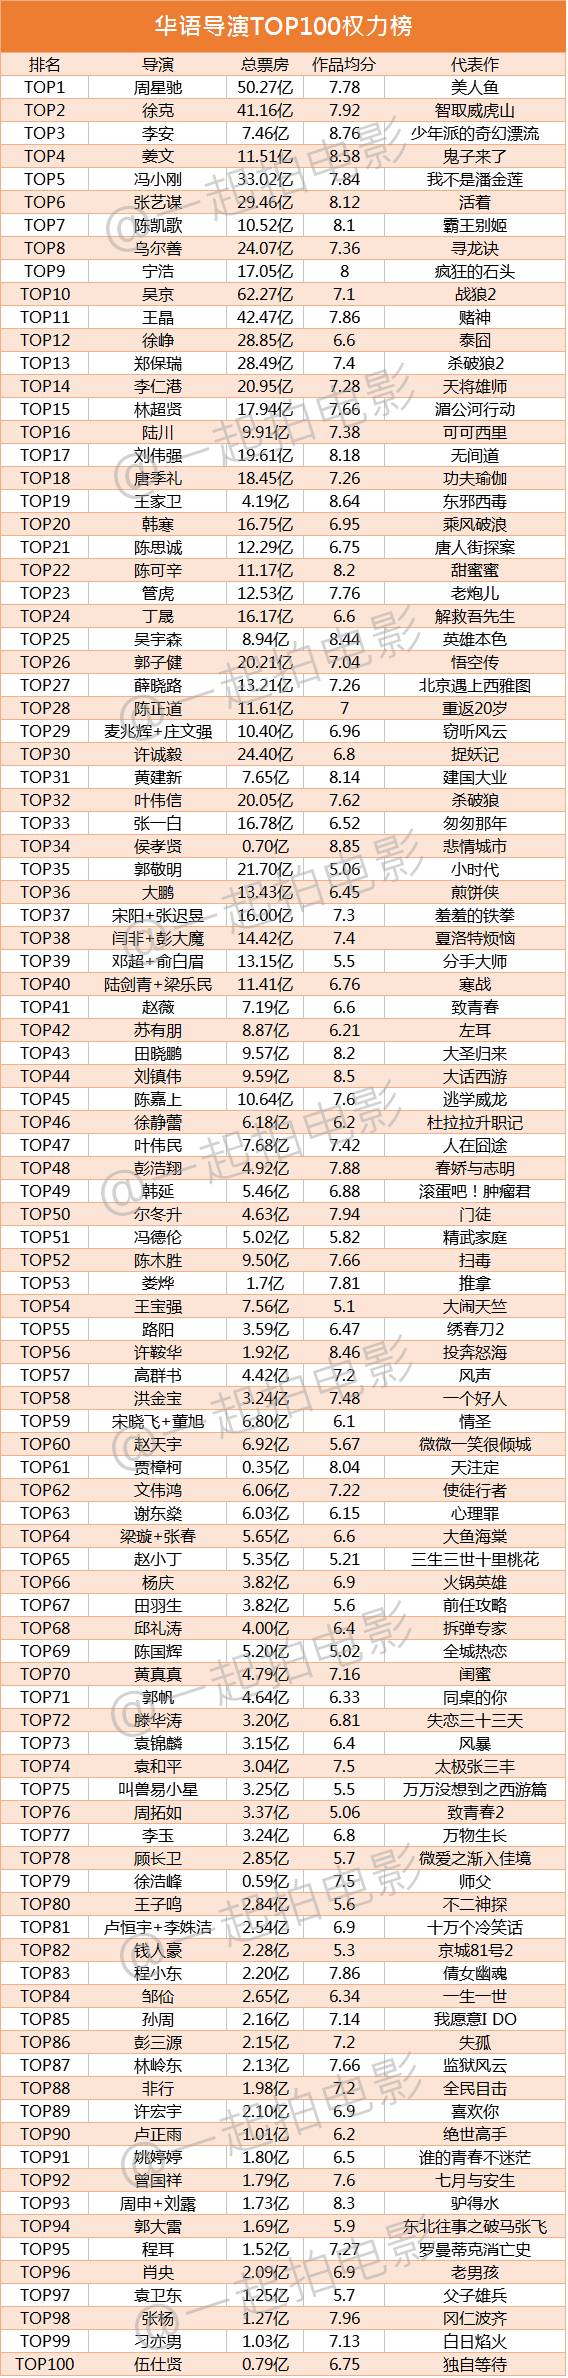 华语电影导演top100权力榜出炉!周星驰,徐克,李安位列前三甲!